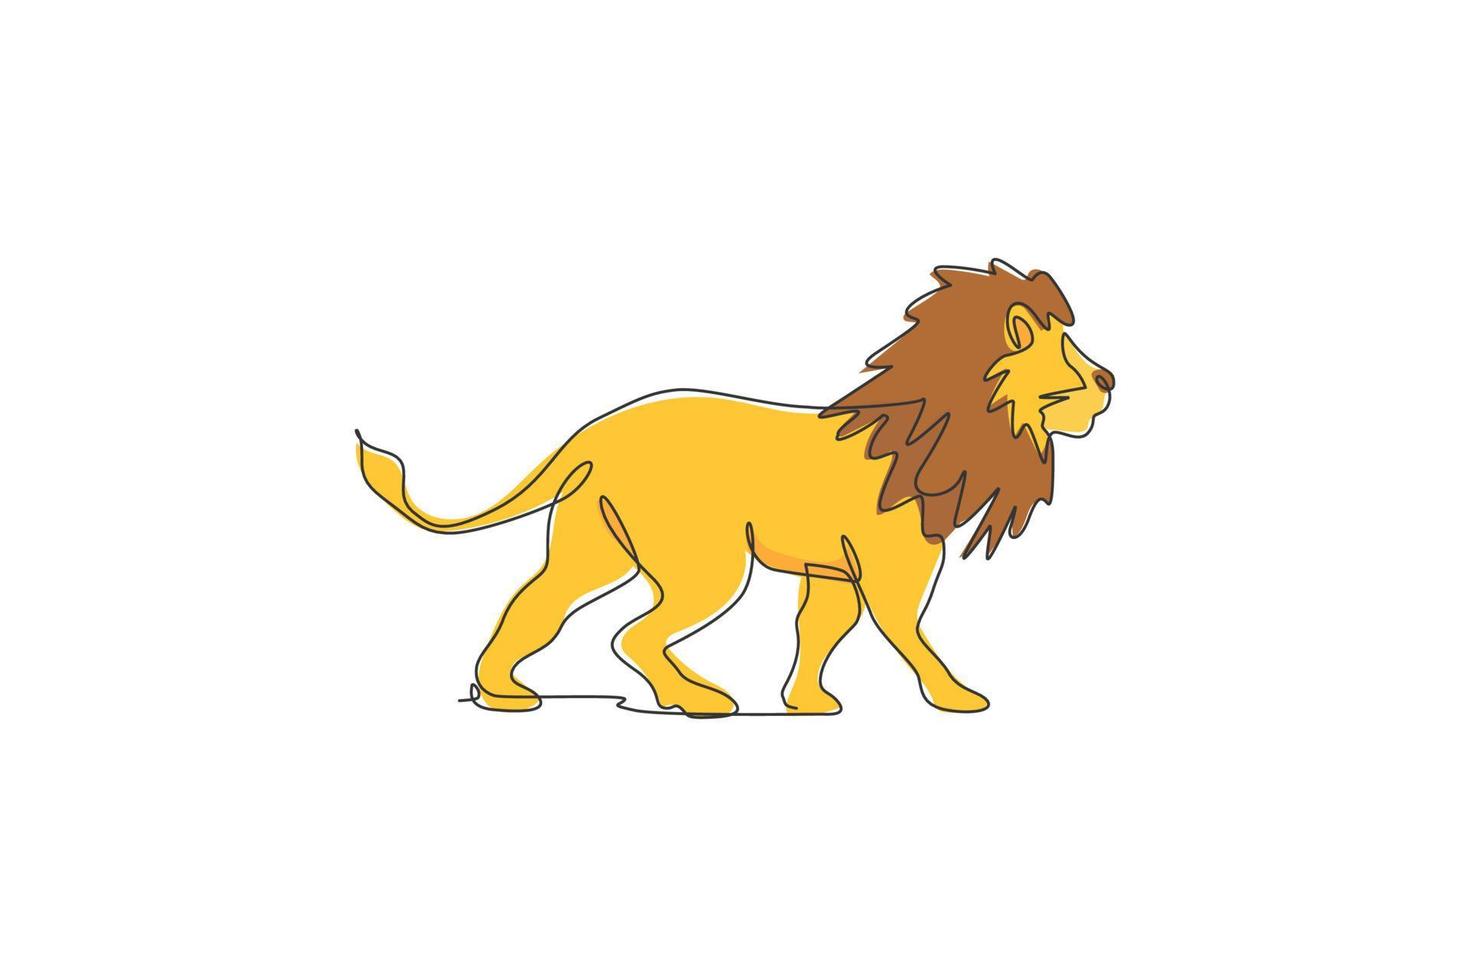 una singola linea di disegno di illustrazione vettoriale di leone maschio selvaggio. conservazione del parco nazionale delle specie protette. concetto di zoo safari. moderno disegno grafico a linea continua